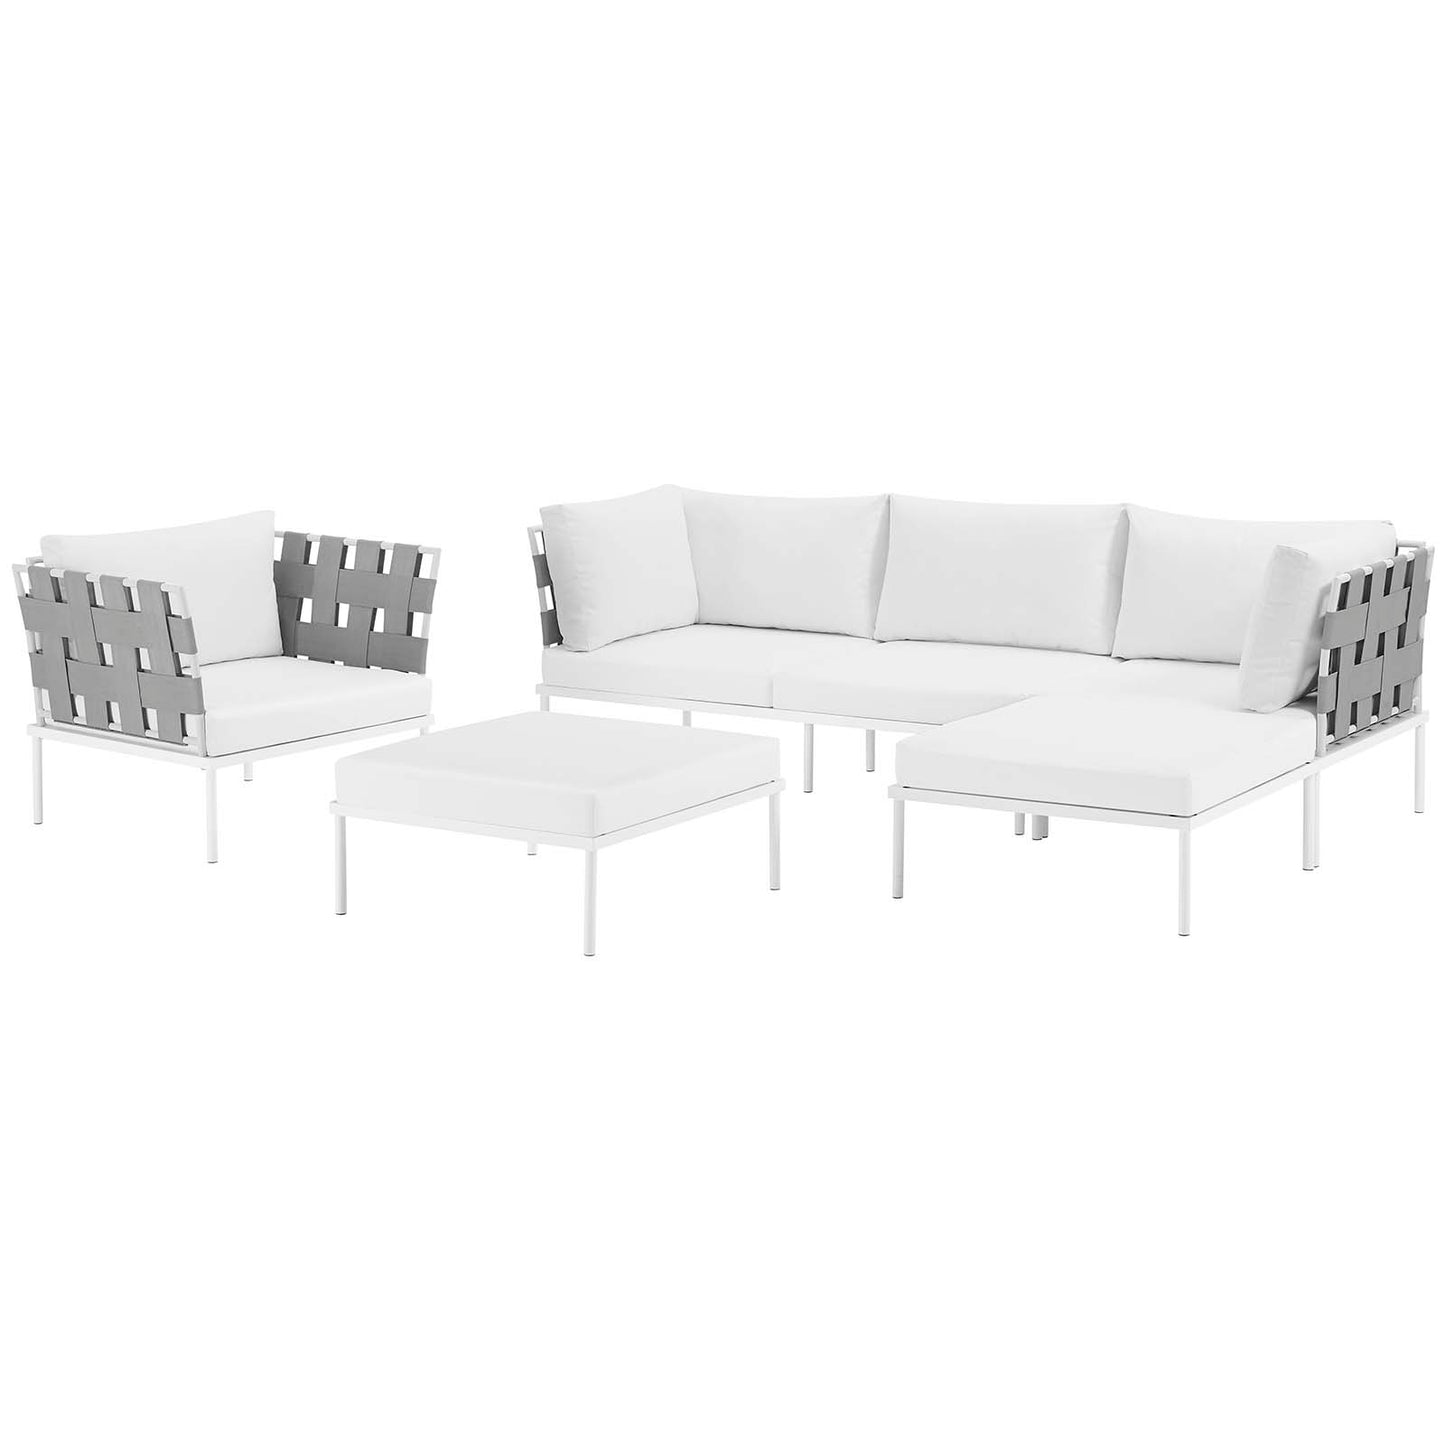 Harmony 6 Piece Outdoor Patio Aluminum Sectional Sofa Set White White EEI-2626-WHI-WHI-SET